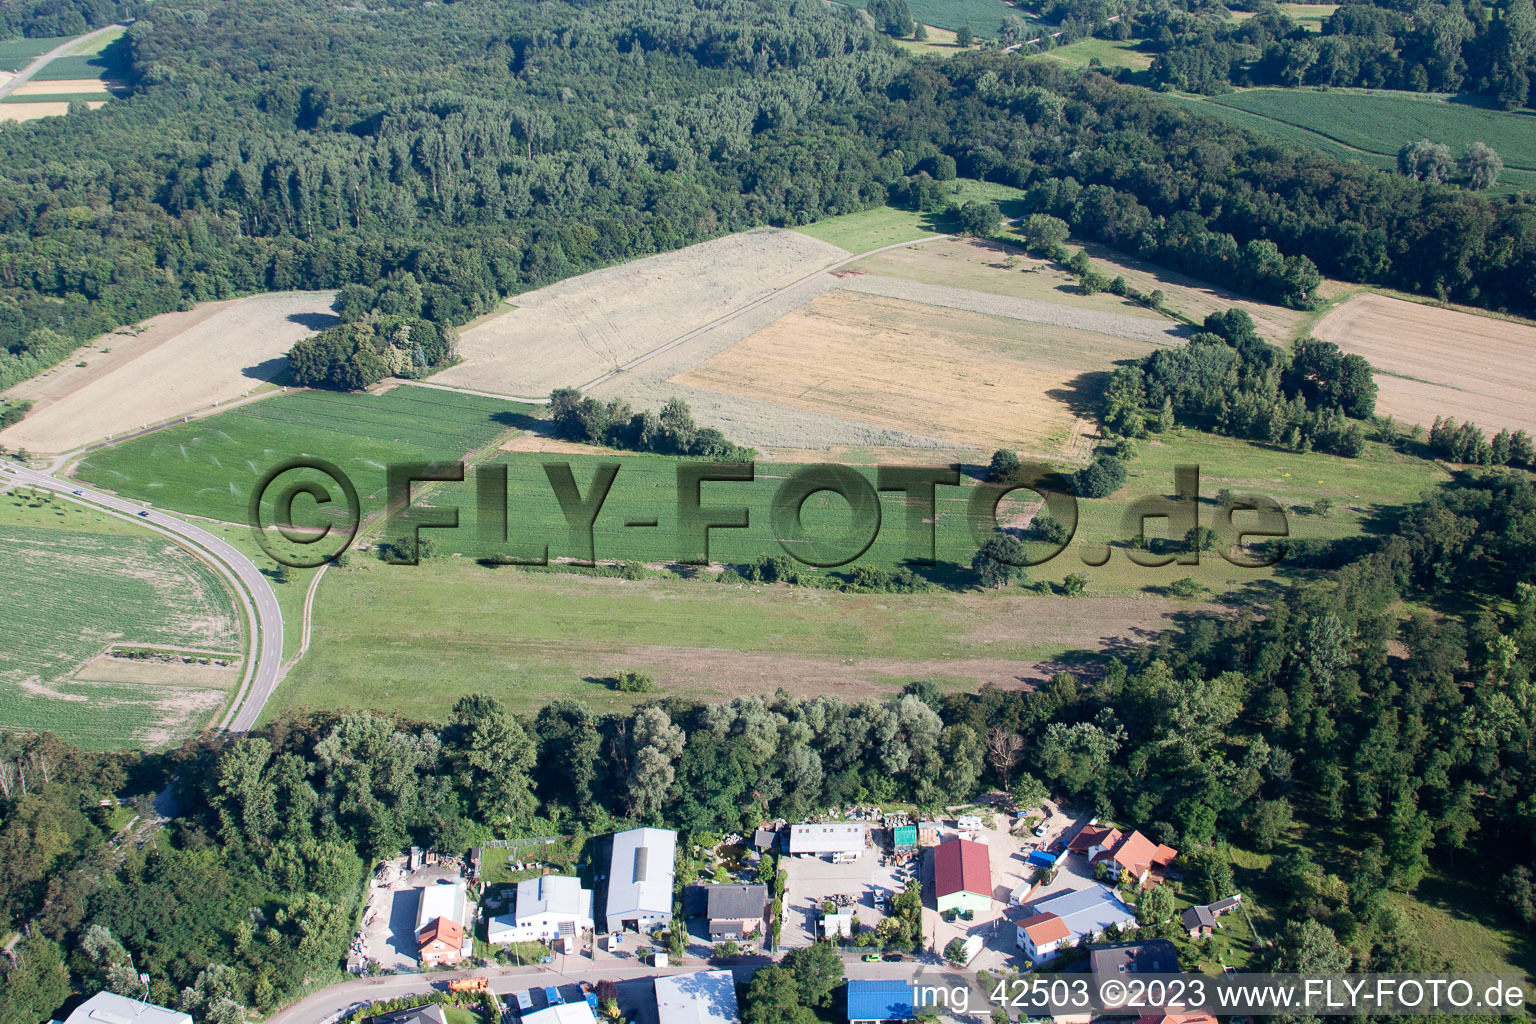 Luftbild von Jockgrim, Tongrube im Bundesland Rheinland-Pfalz, Deutschland